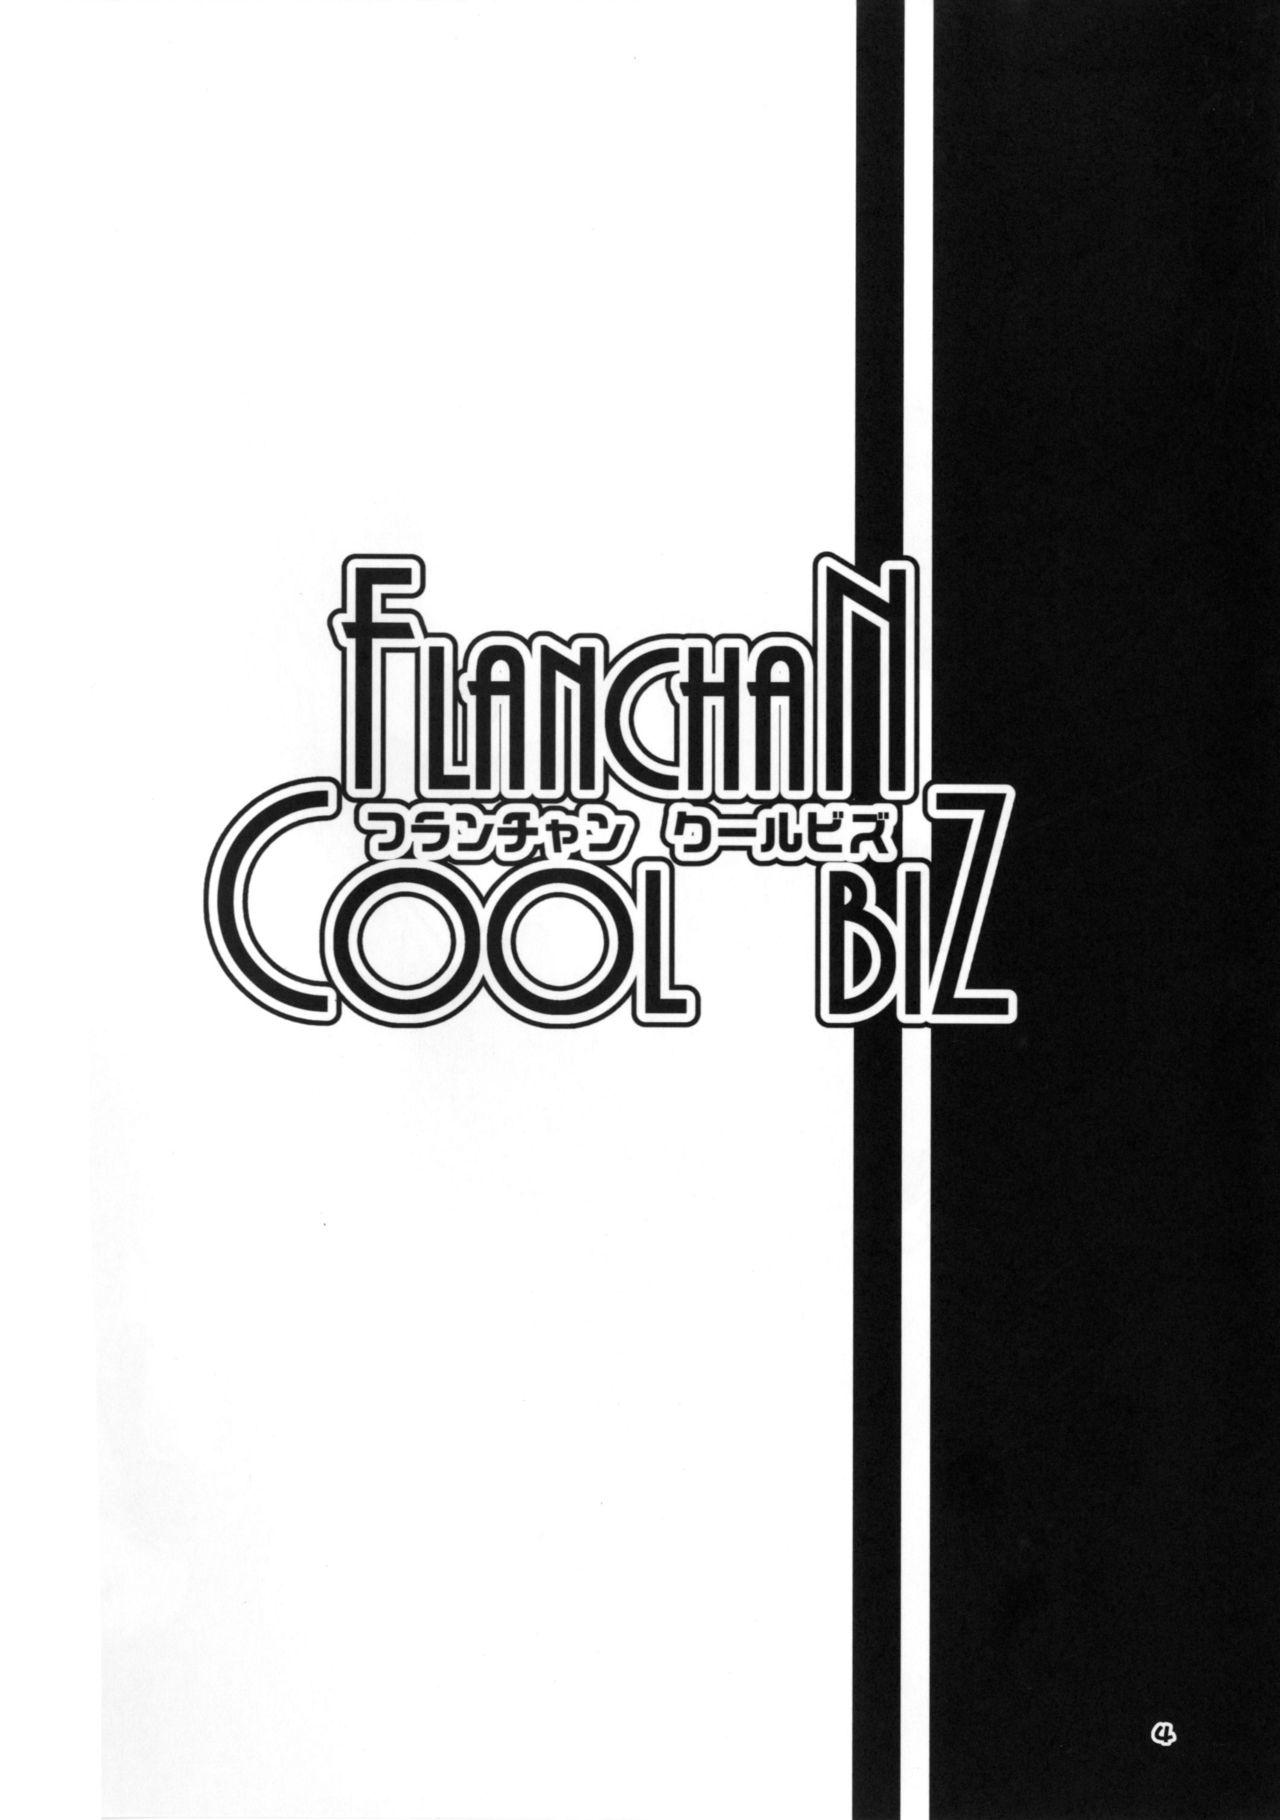 FLAN-CHAN COOL BIZ 2